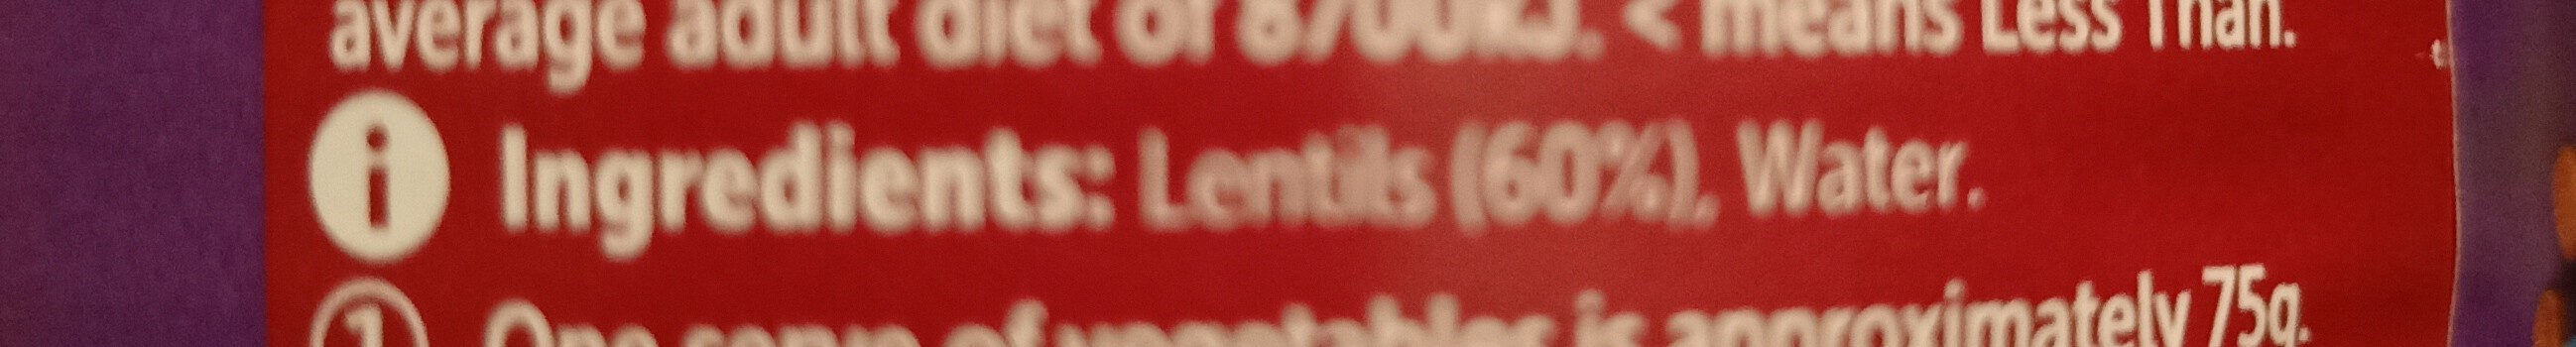 lentils Woolworths - Ingredients